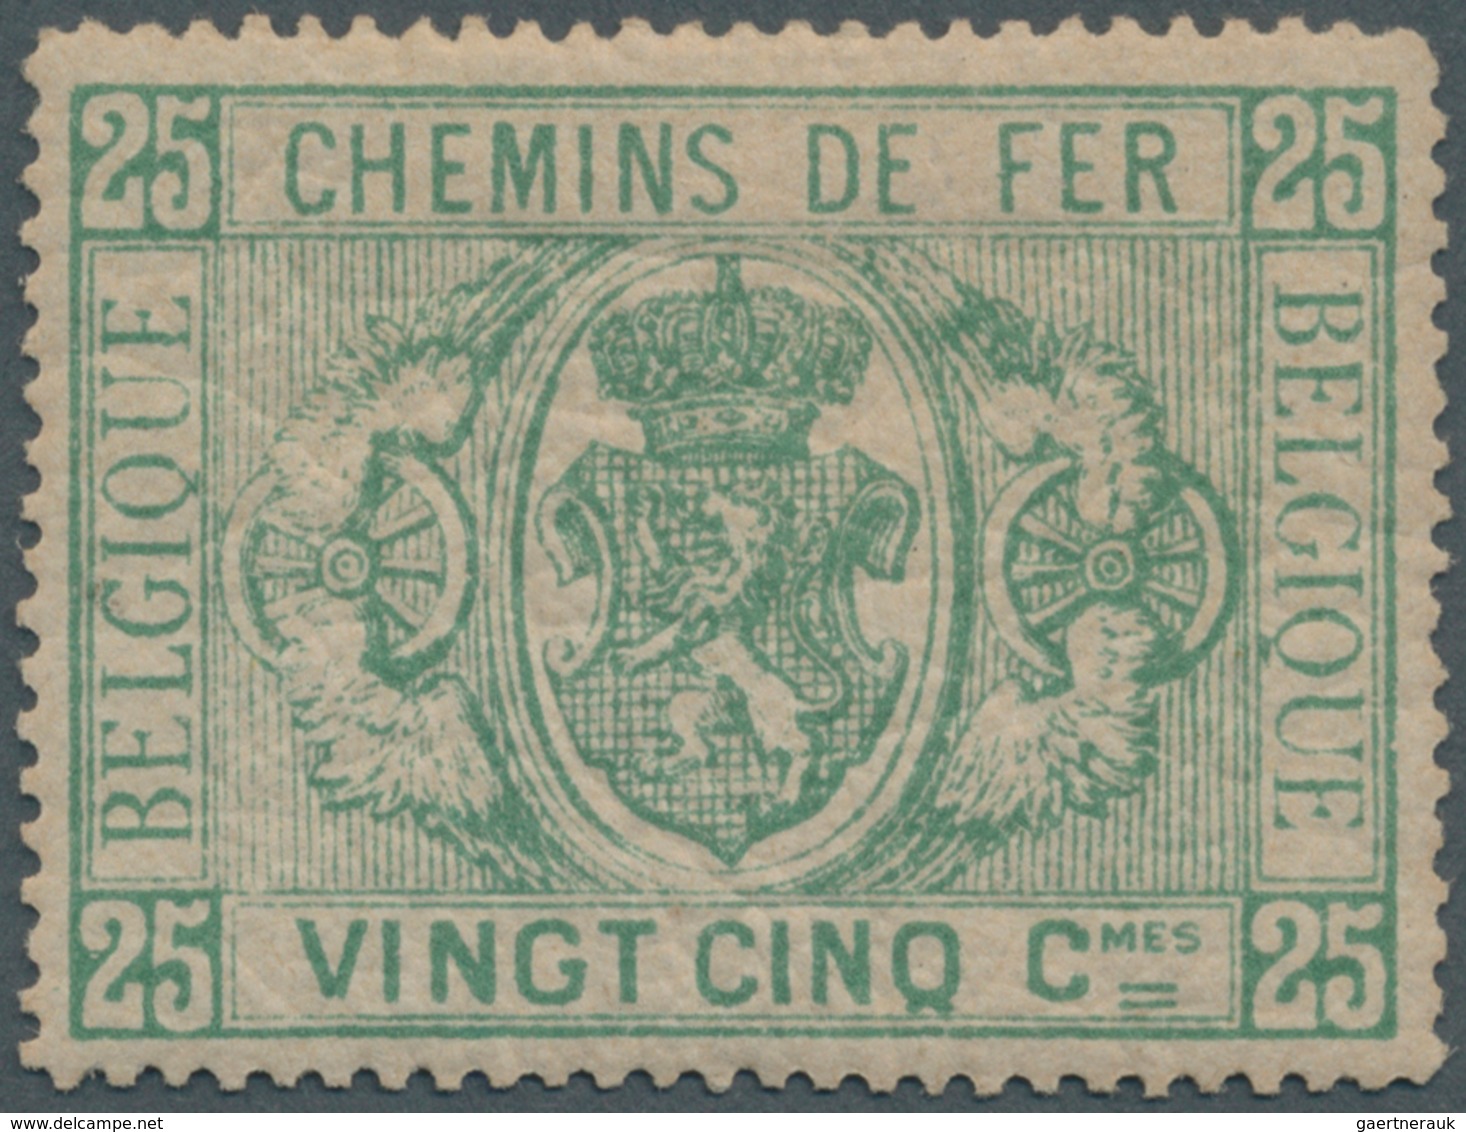 Belgien - Eisenbahnpaketmarken: 1879, 25 C. Green, Fresh Colour, Unused, Fine, 550,- - Reisgoedzegels [BA]